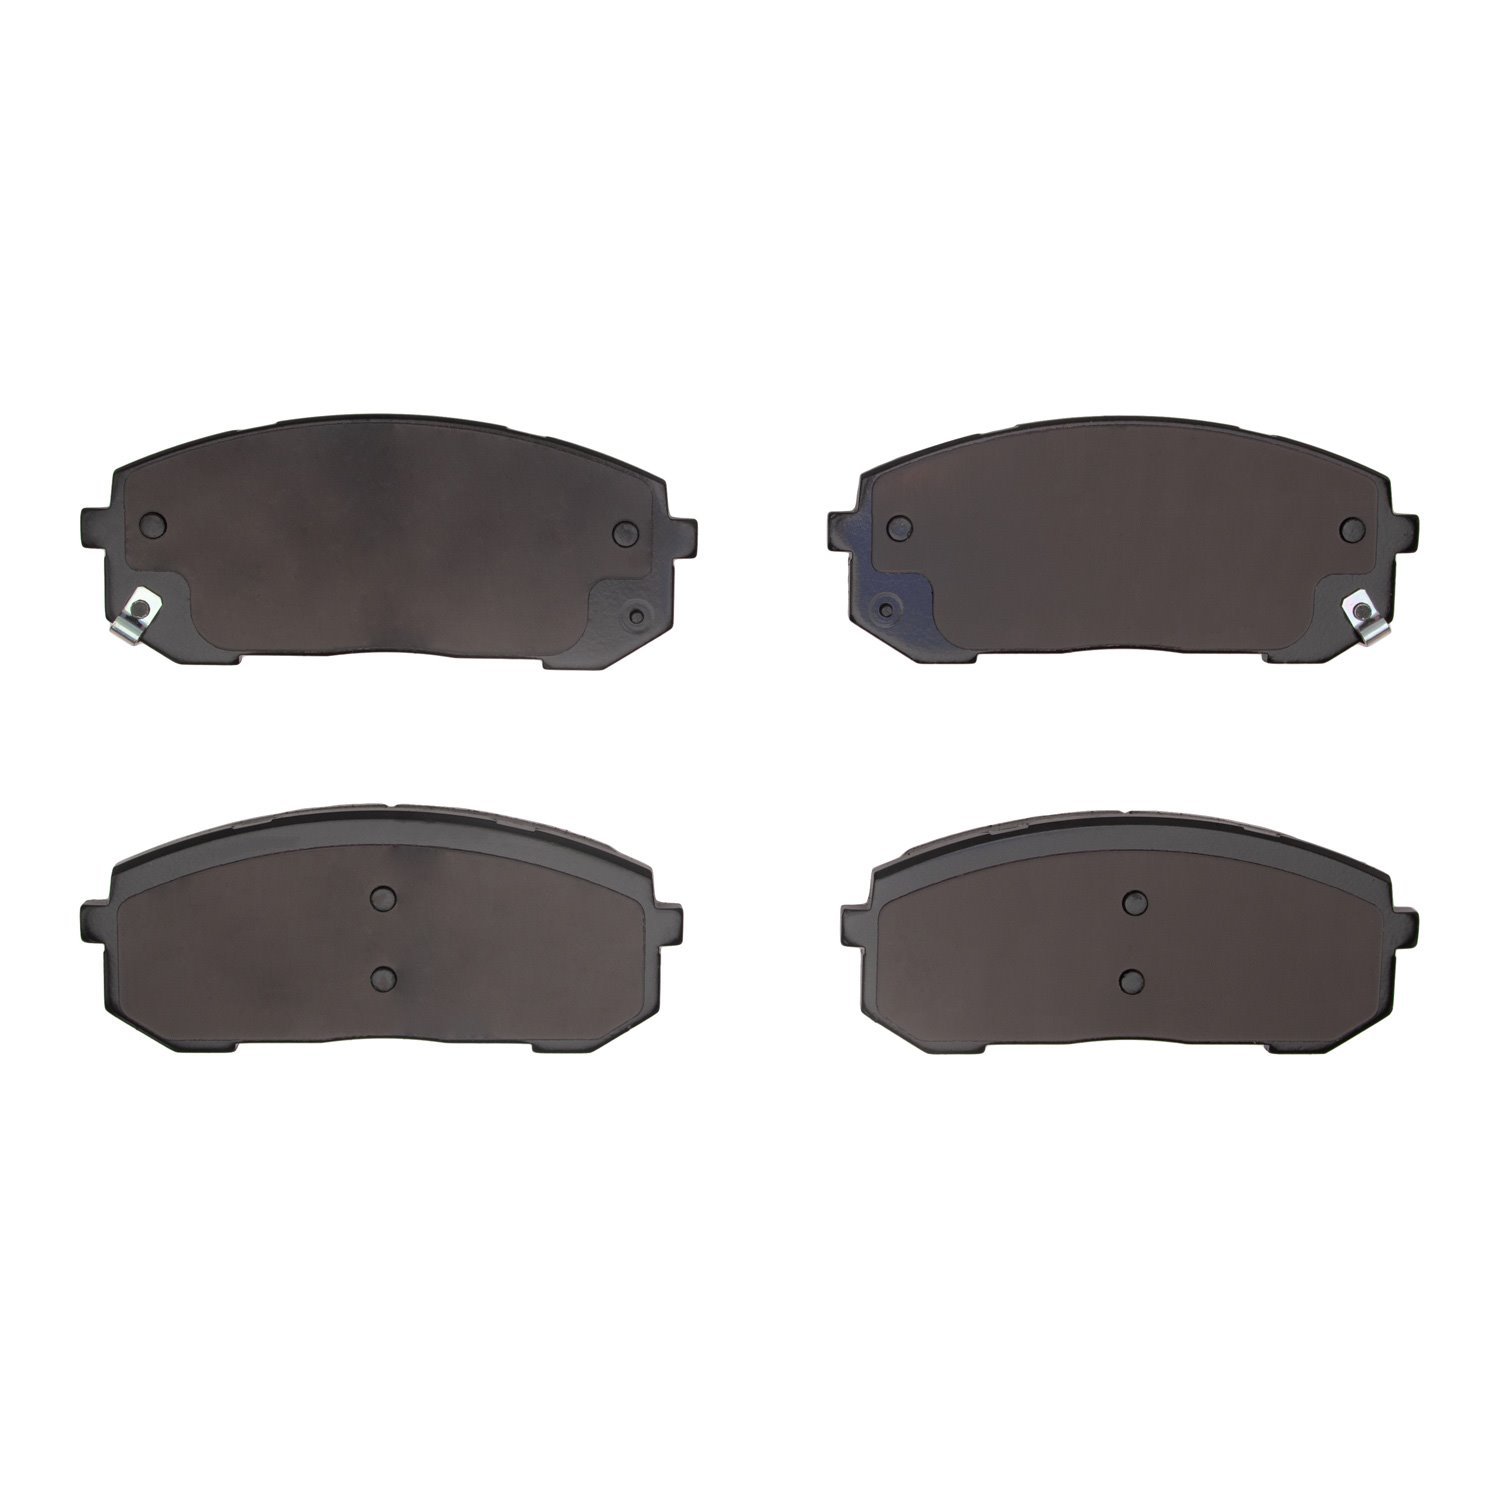 1310-2302-00 3000-Series Ceramic Brake Pads, Fits Select Kia/Hyundai/Genesis, Position: Front